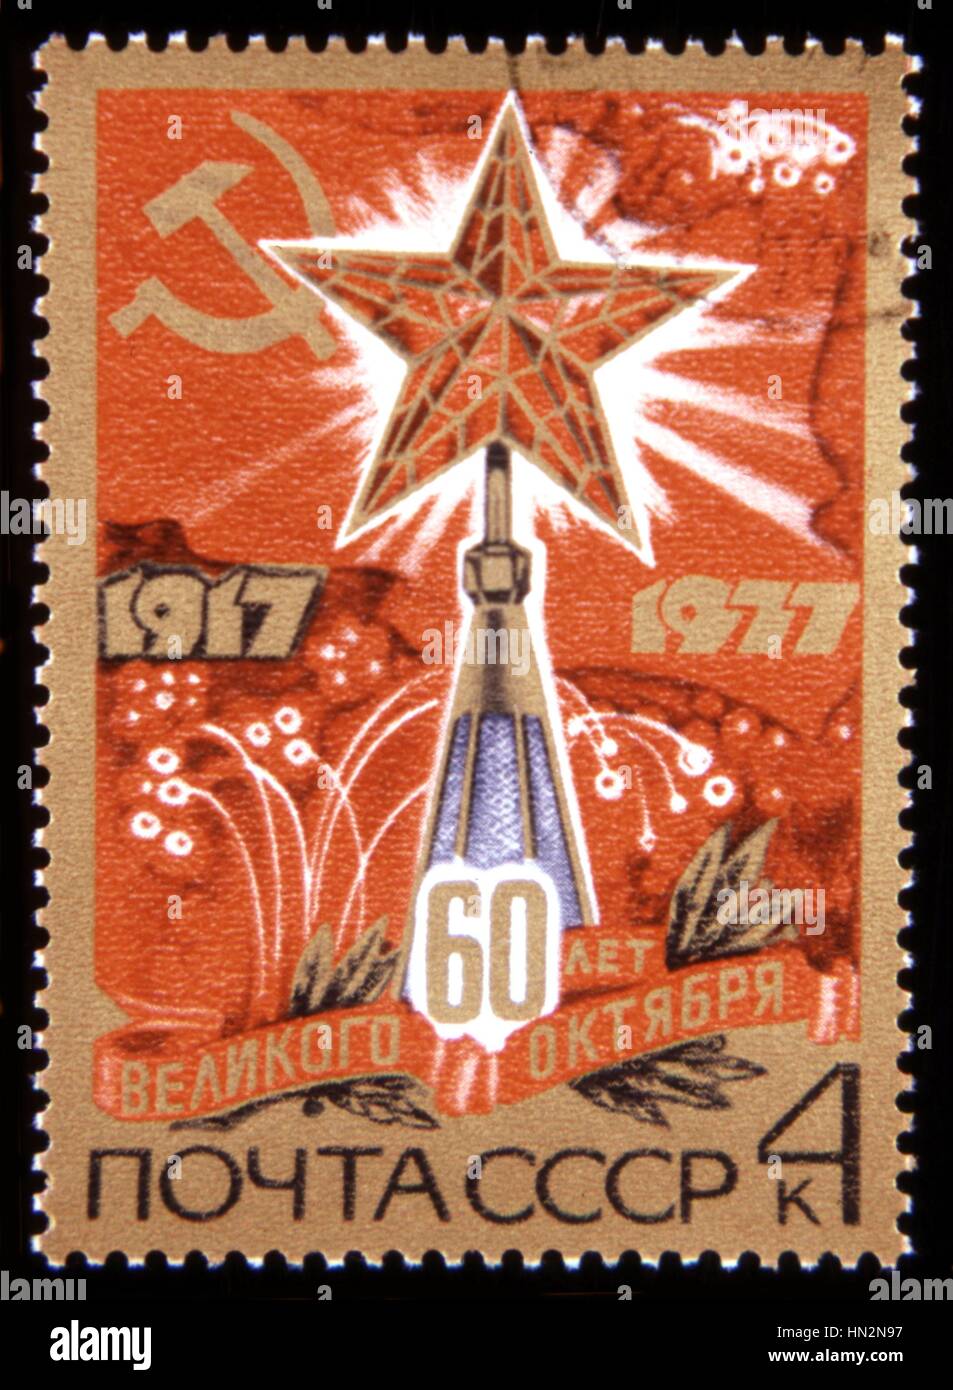 Timbre-poste commémorant le 60e anniversaire de la révolution d'octobre 1917 1977 URSS Collection privée Banque D'Images